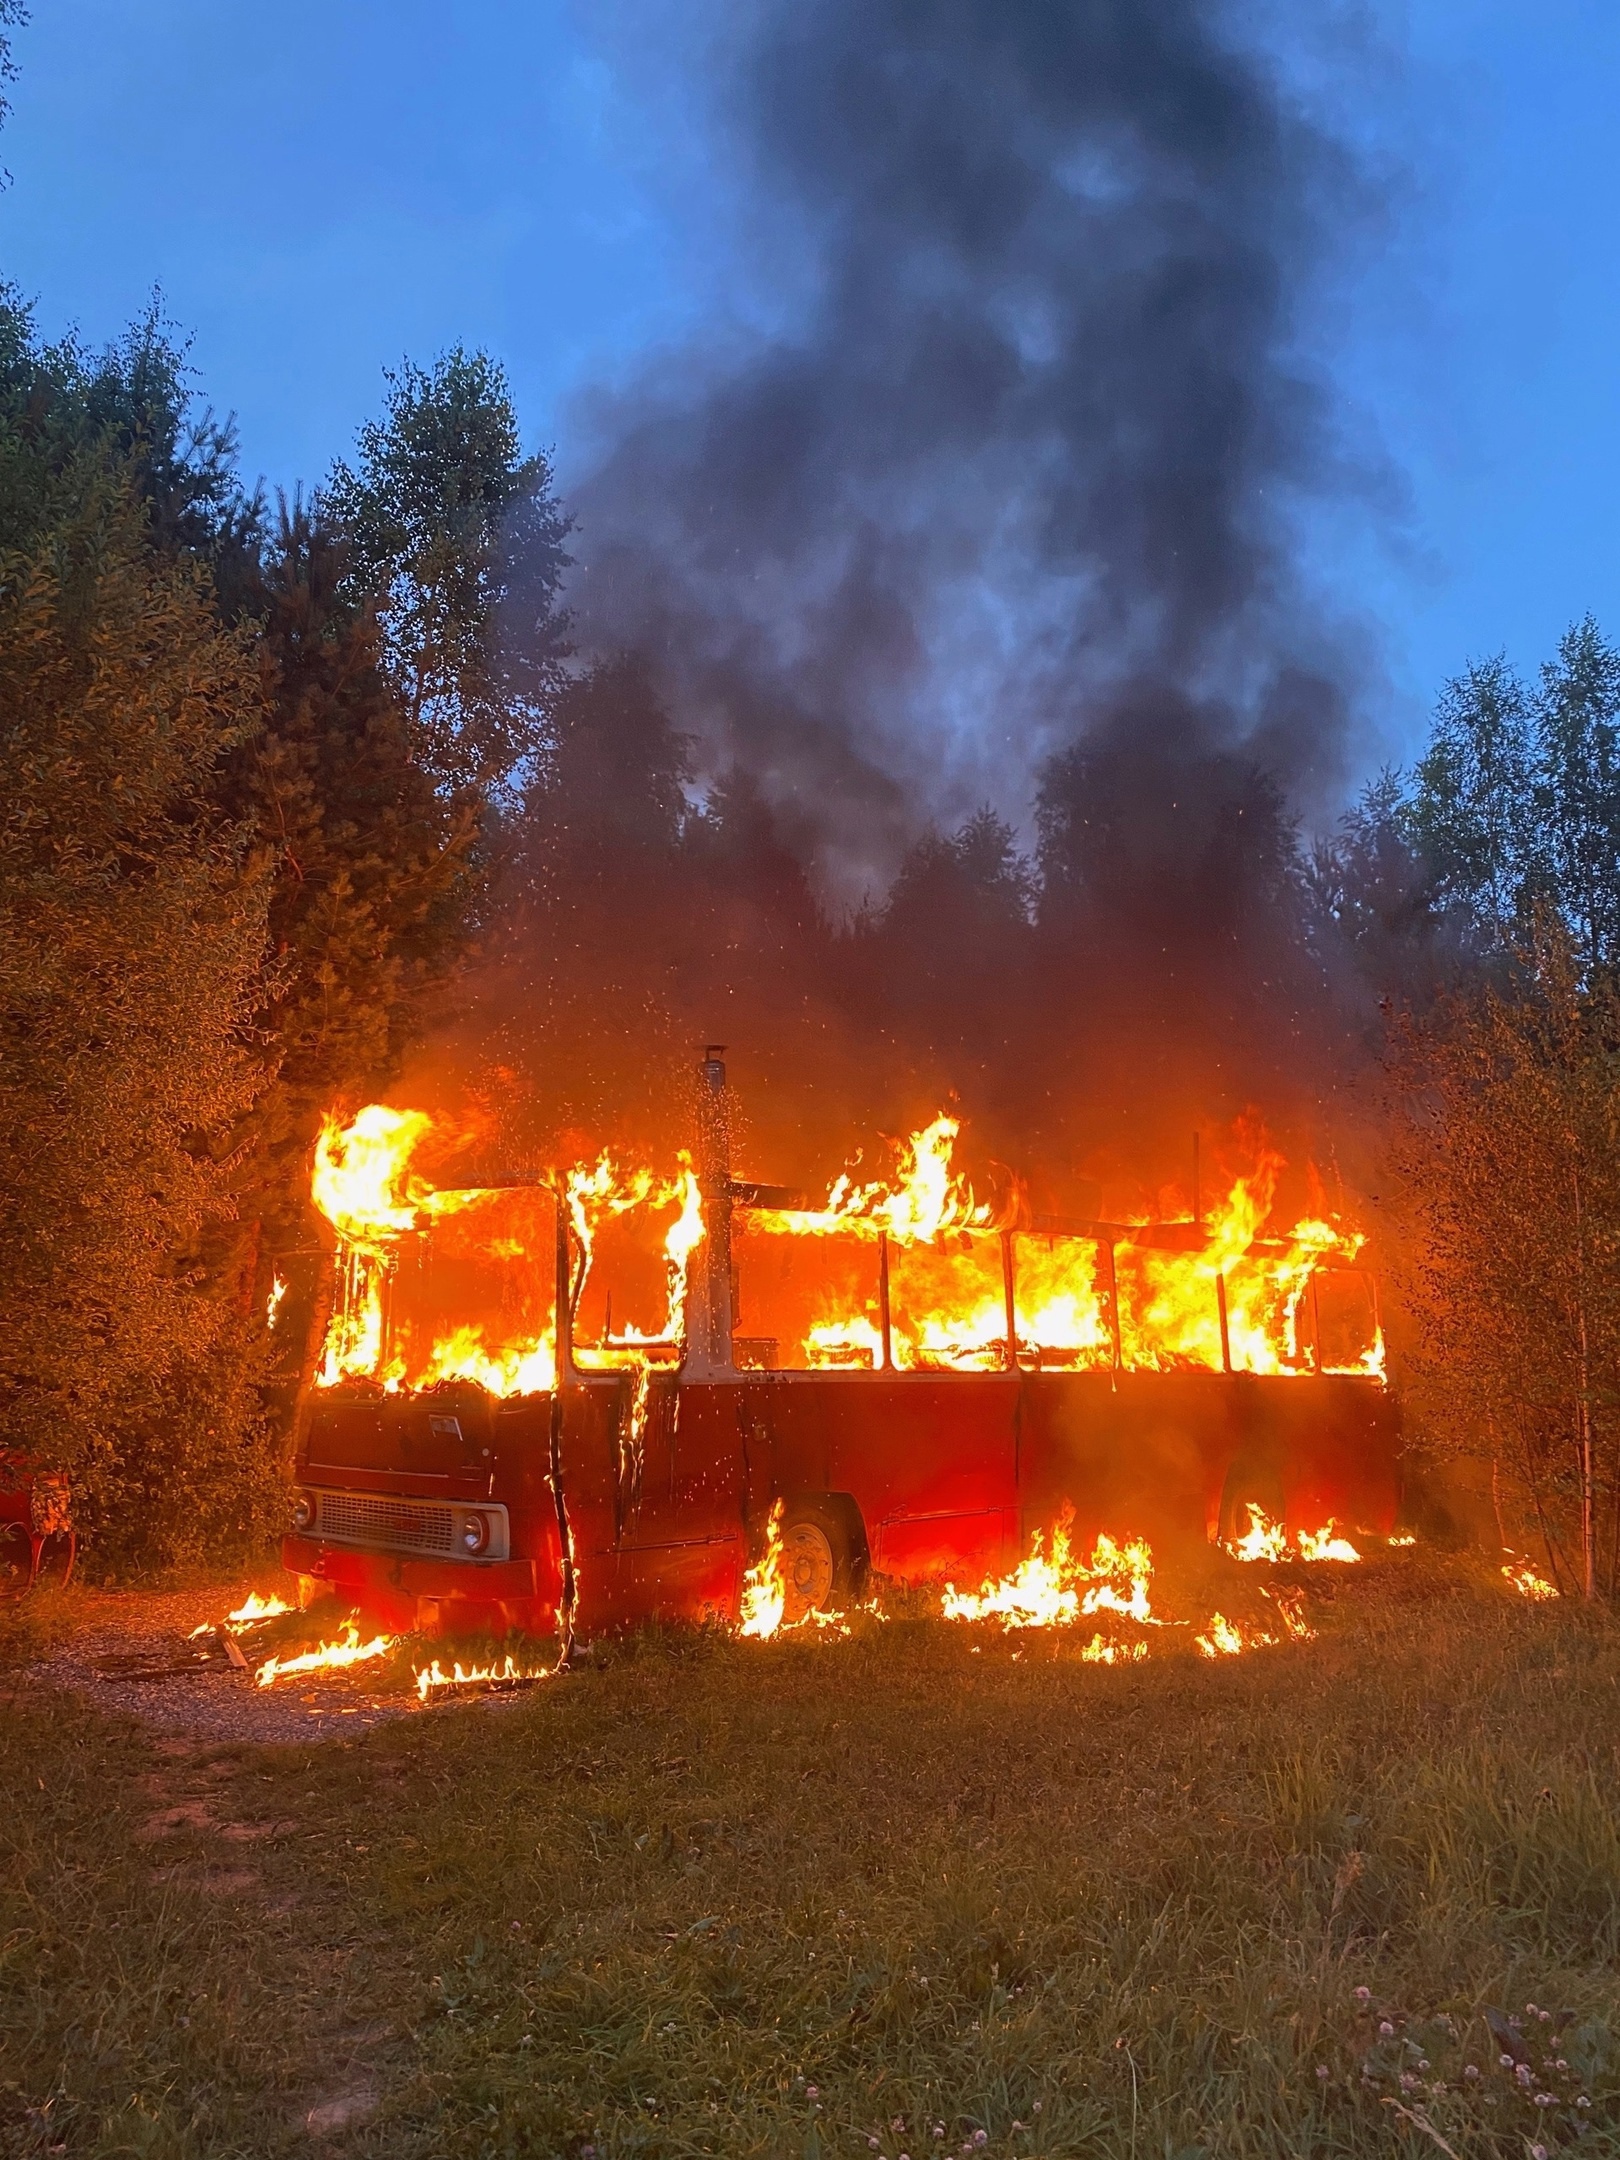 Под Кировом огонь уничтожил уникальный глэмпинг на базе старого автобуса